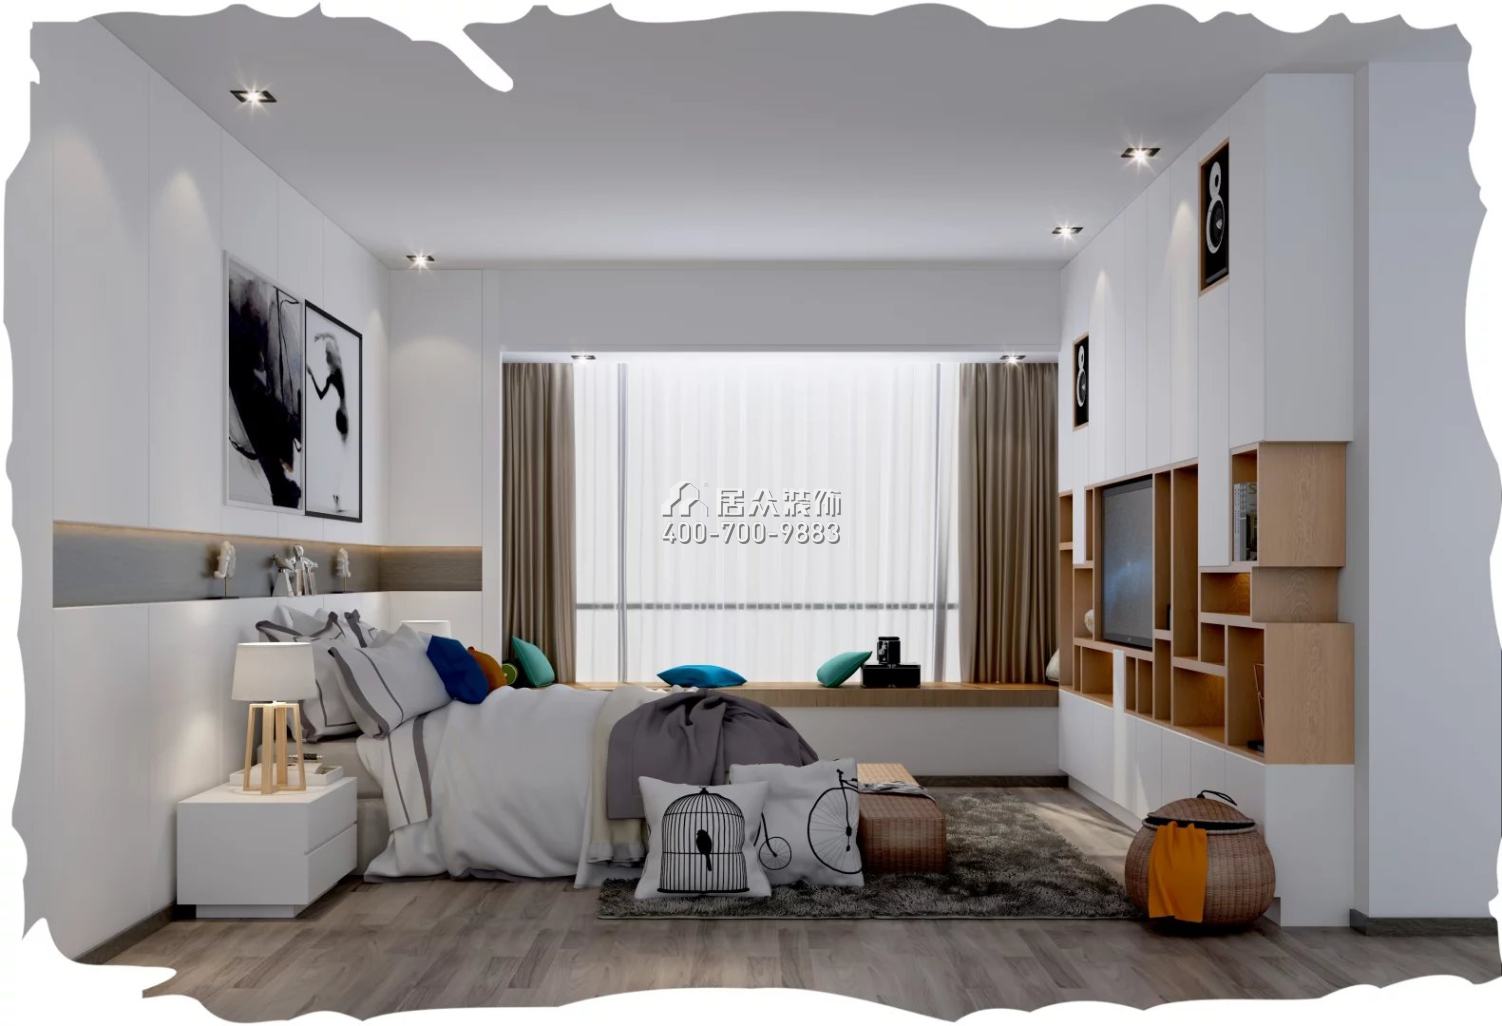 鸿翔花园168平方米现代简约风格平层户型卧室装修效果图